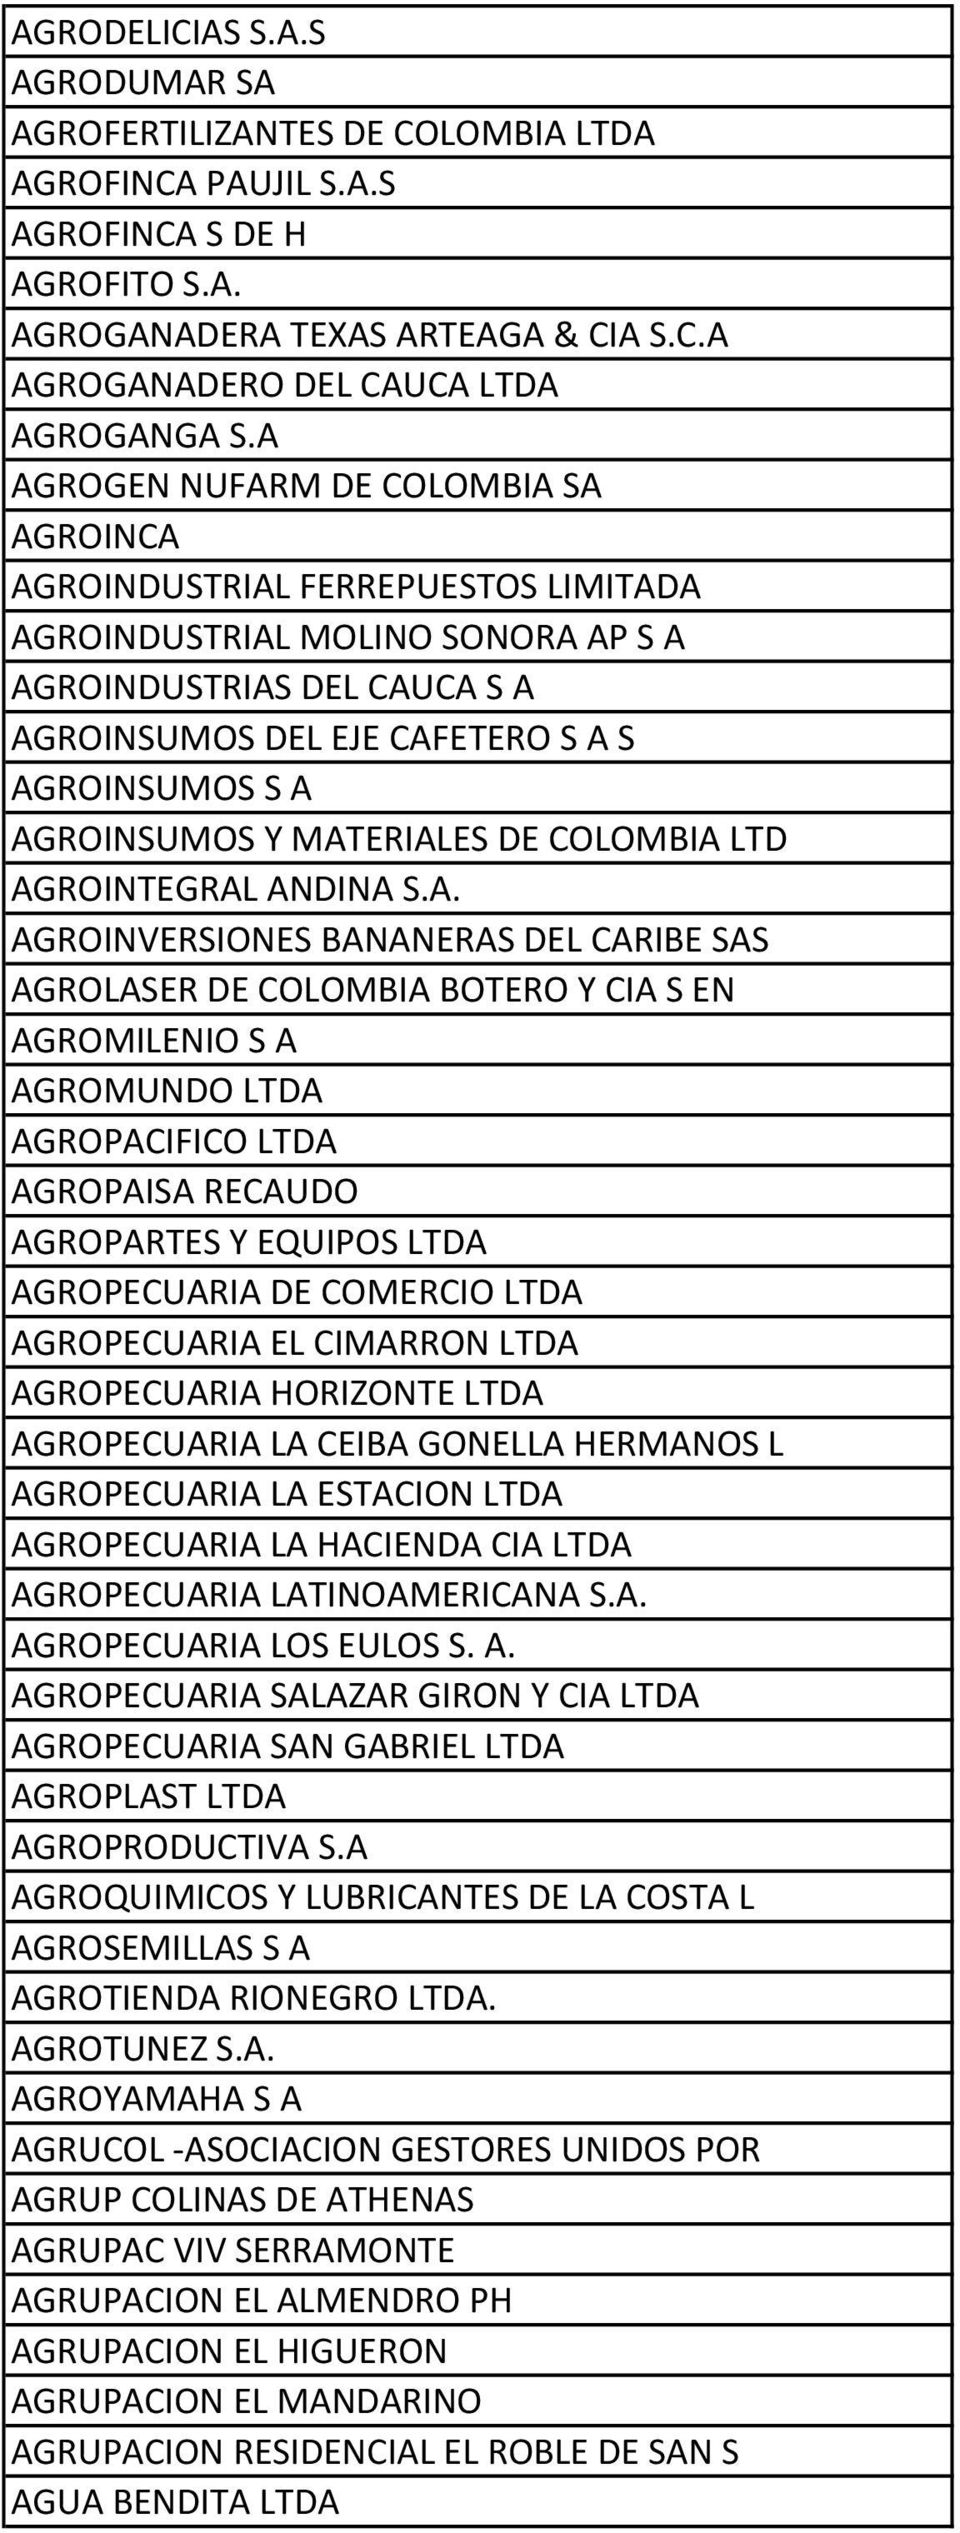 AGROINSUMOS Y MATERIALES DE COLOMBIA LTD AGROINTEGRAL ANDINA S.A. AGROINVERSIONES BANANERAS DEL CARIBE SAS AGROLASER DE COLOMBIA BOTERO Y CIA S EN AGROMILENIO S A AGROMUNDO LTDA AGROPACIFICO LTDA